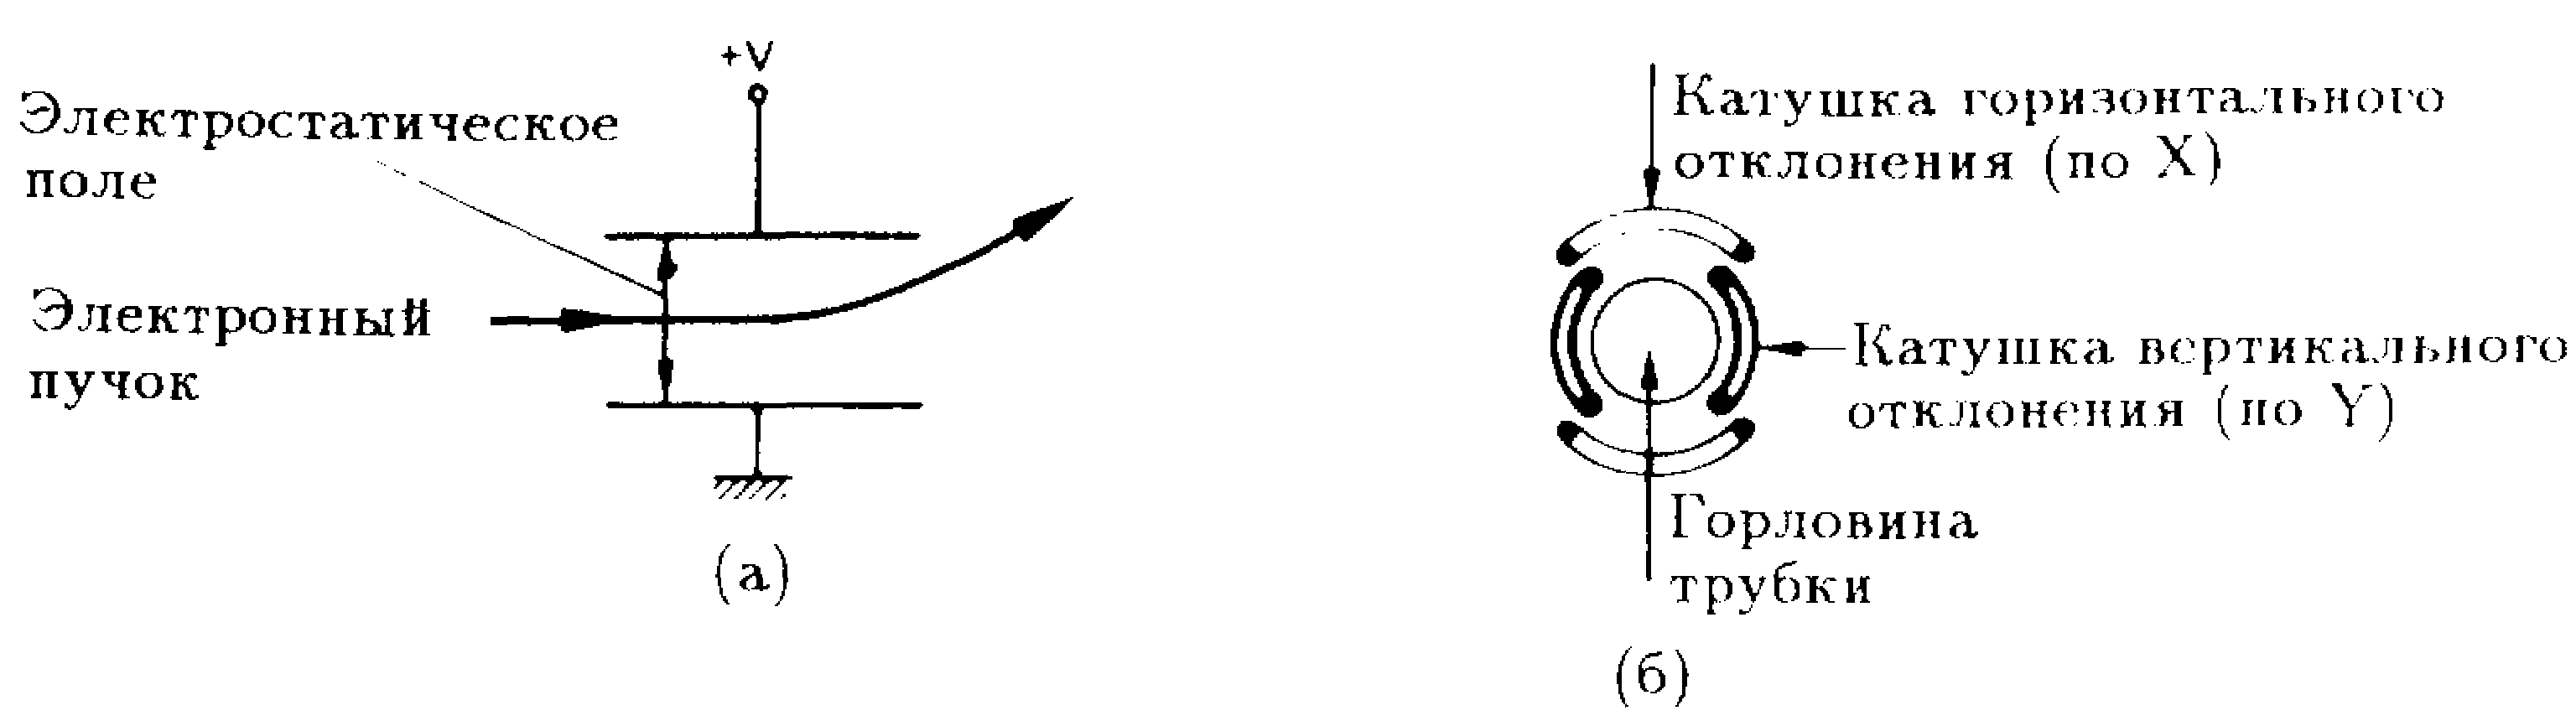 Электростатический (а) и электромагнитный (б)  методы отклонения электронного пучка